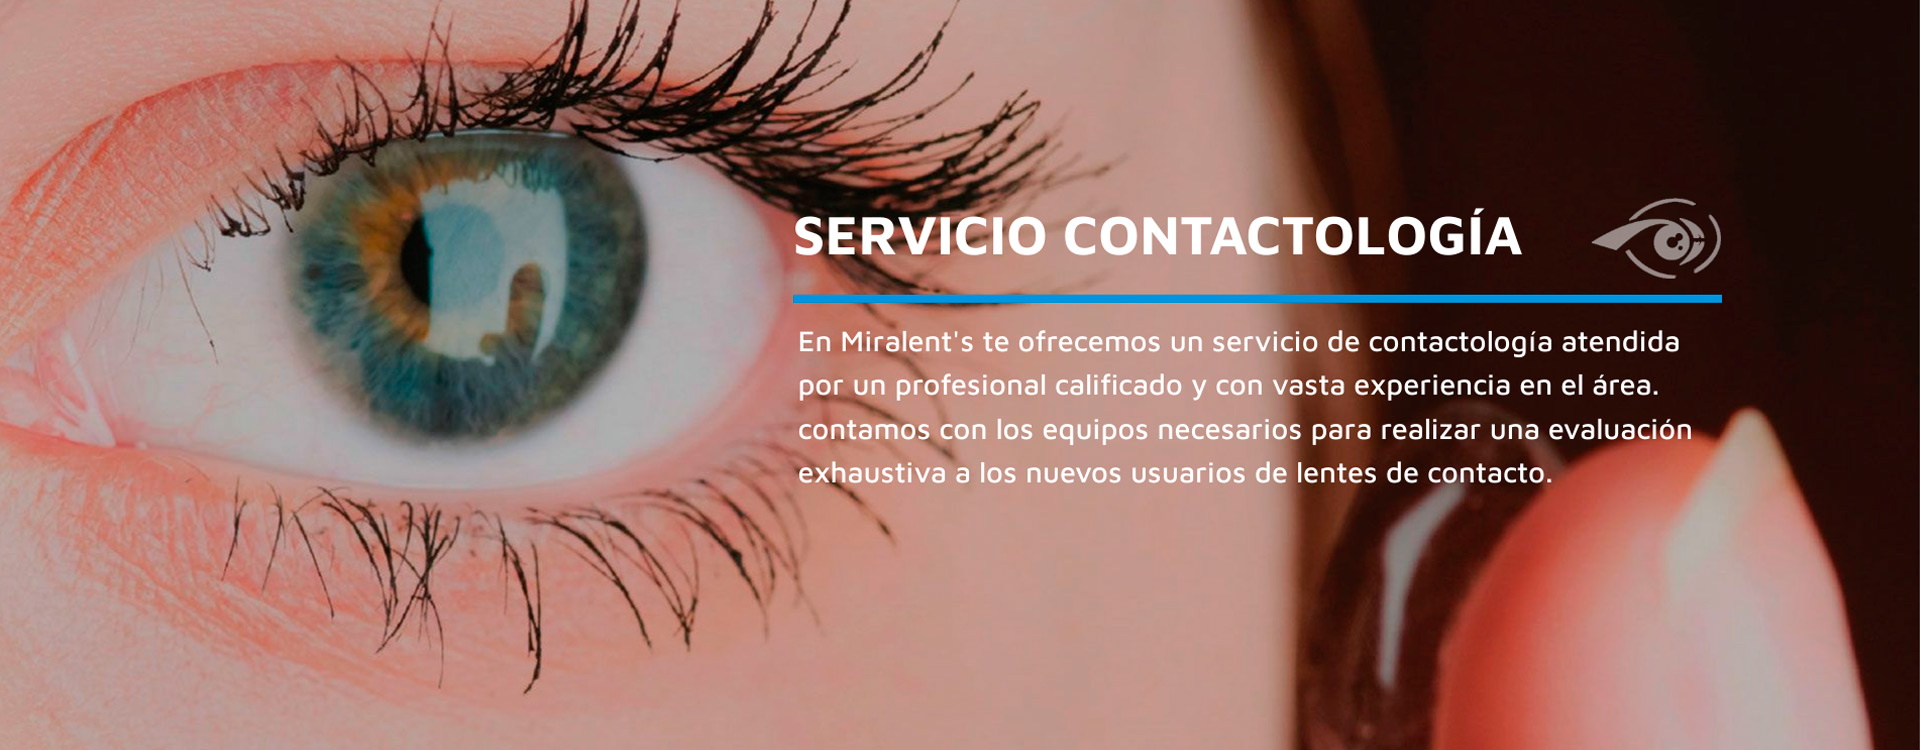 miralents centro optico servicios contactología